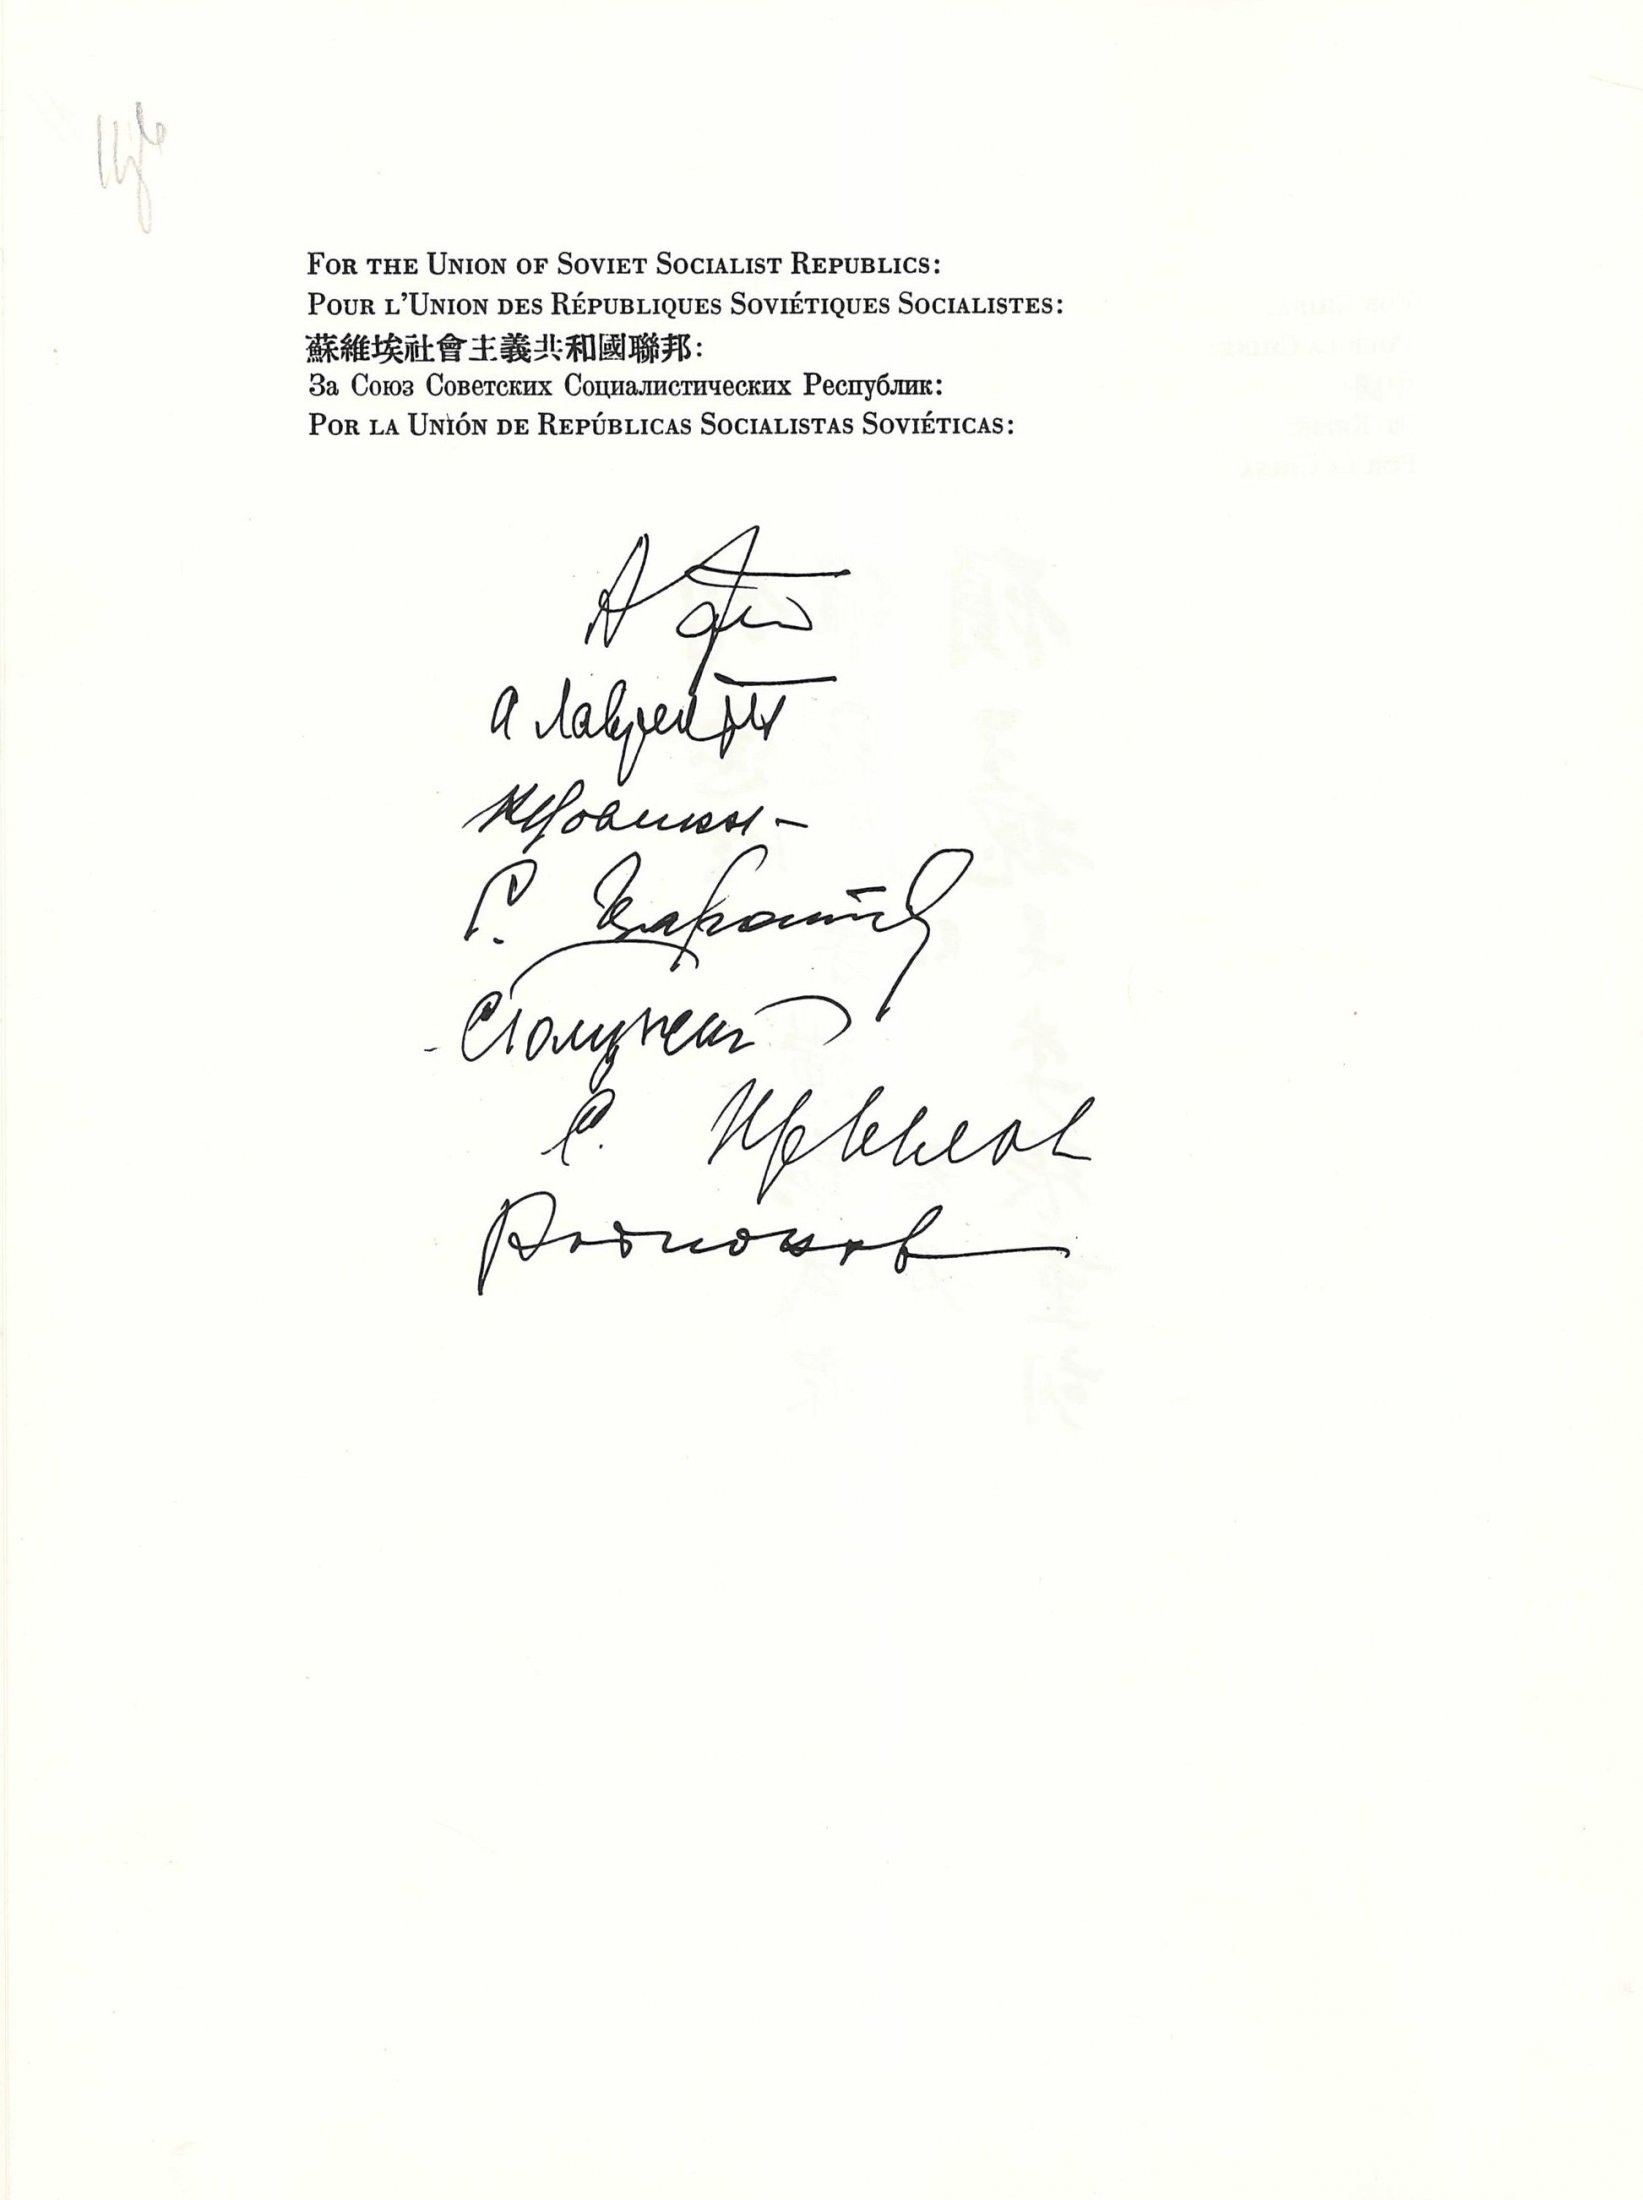 Тимчасова угода, укладена представленими на Конференції Об'єднаних Націй у Сан-Фрациско урядами щодо створення Міжнародної Організації. 1945 р.